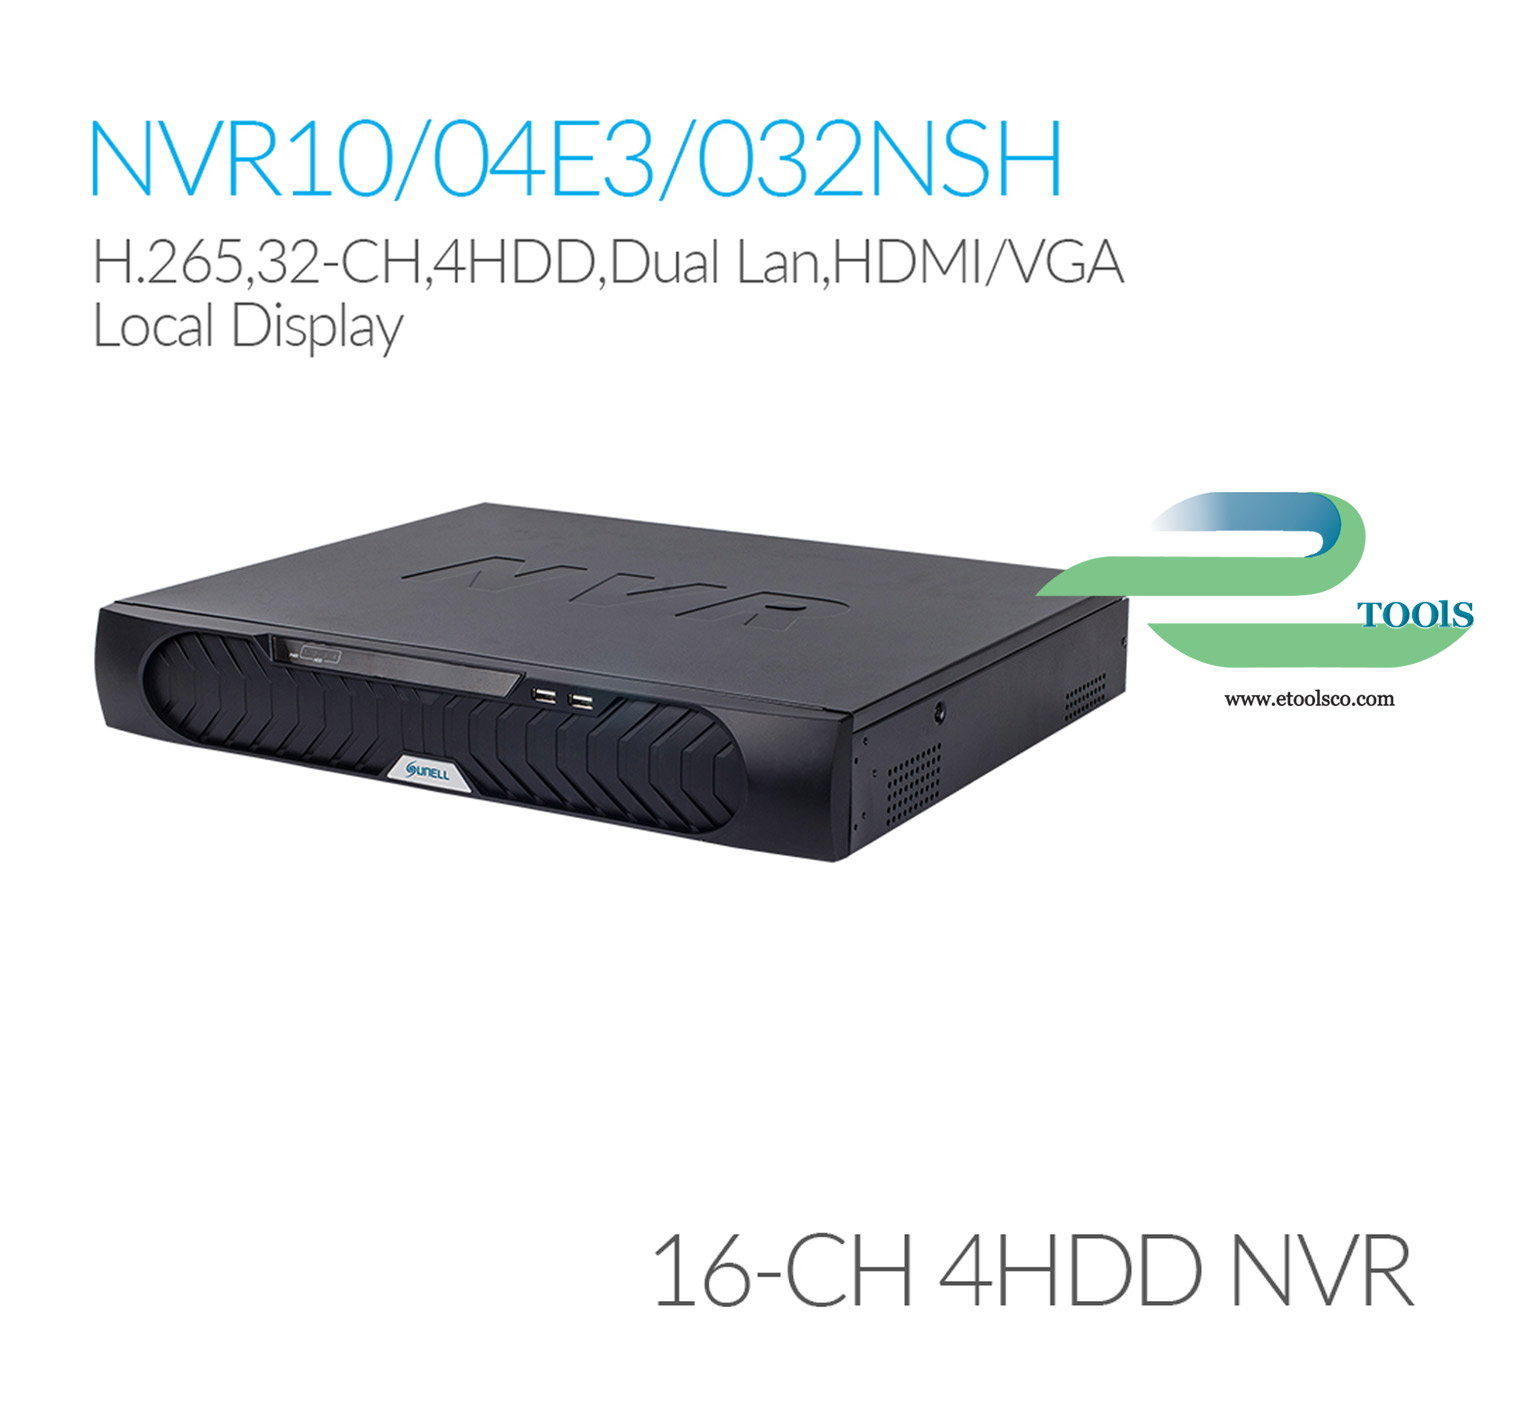 NVR سانل SN NVR10/04E3032NSH